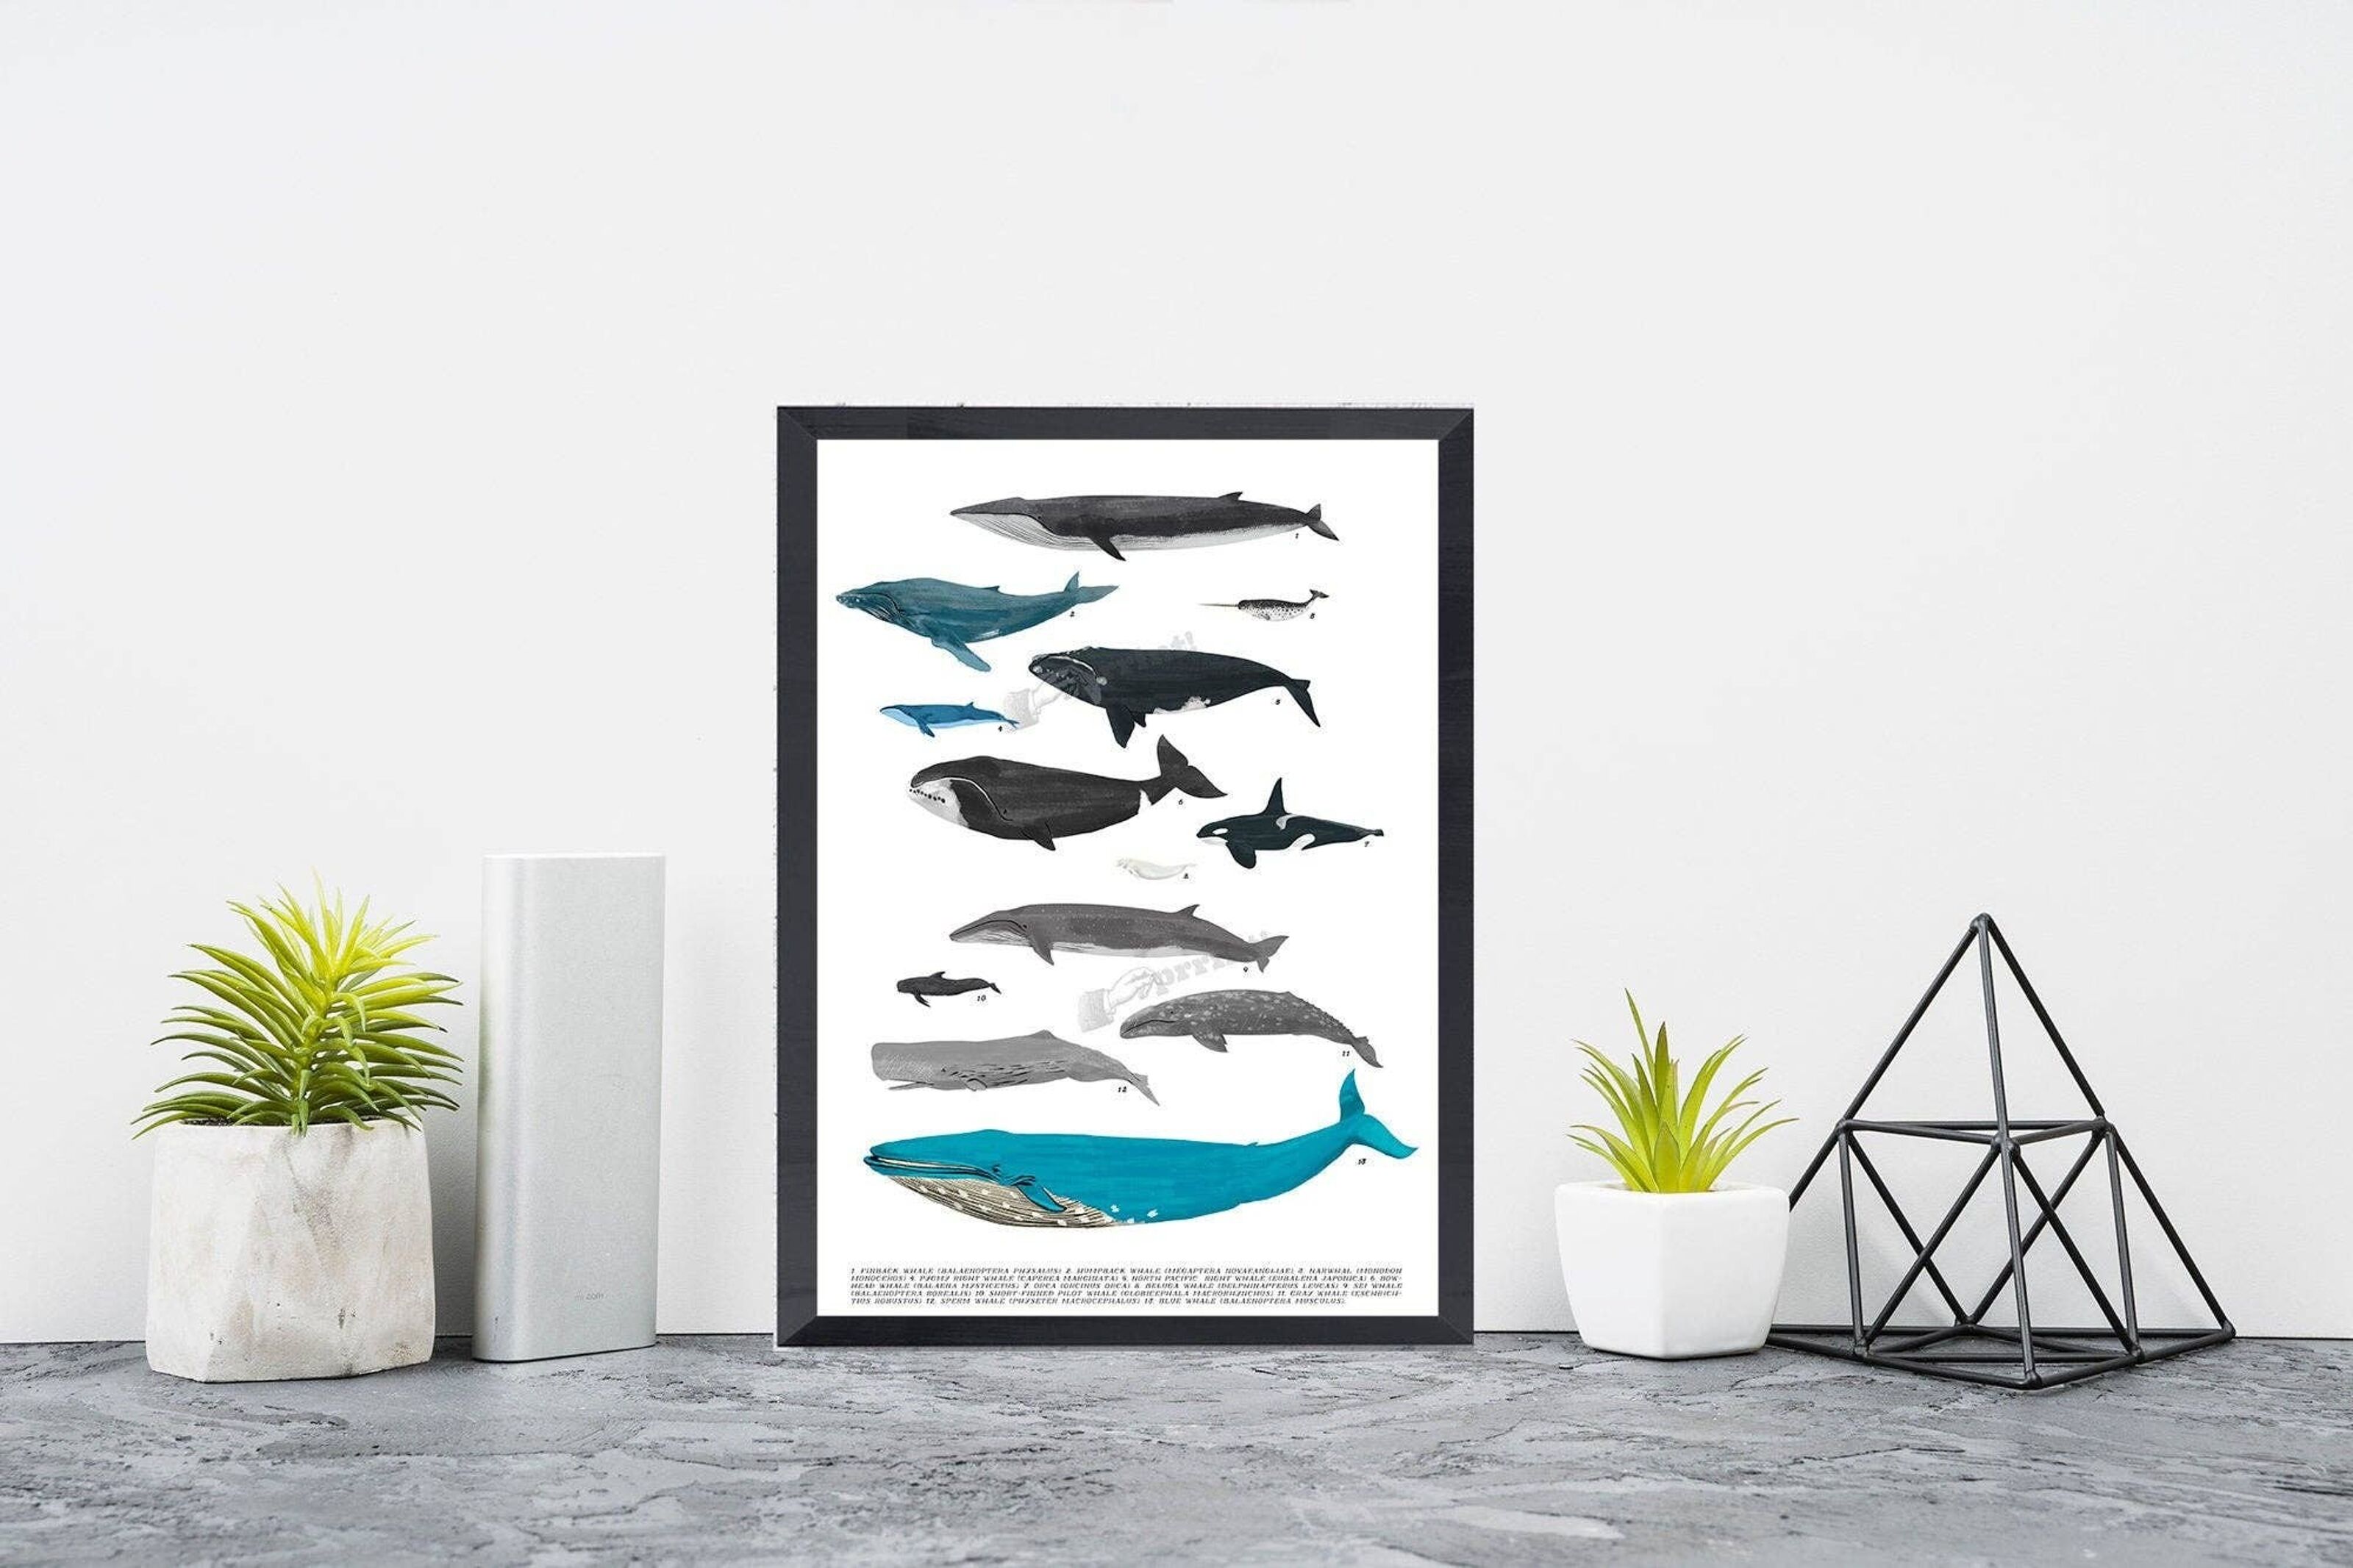 Beluga Cat  Art Board Prints for Sale